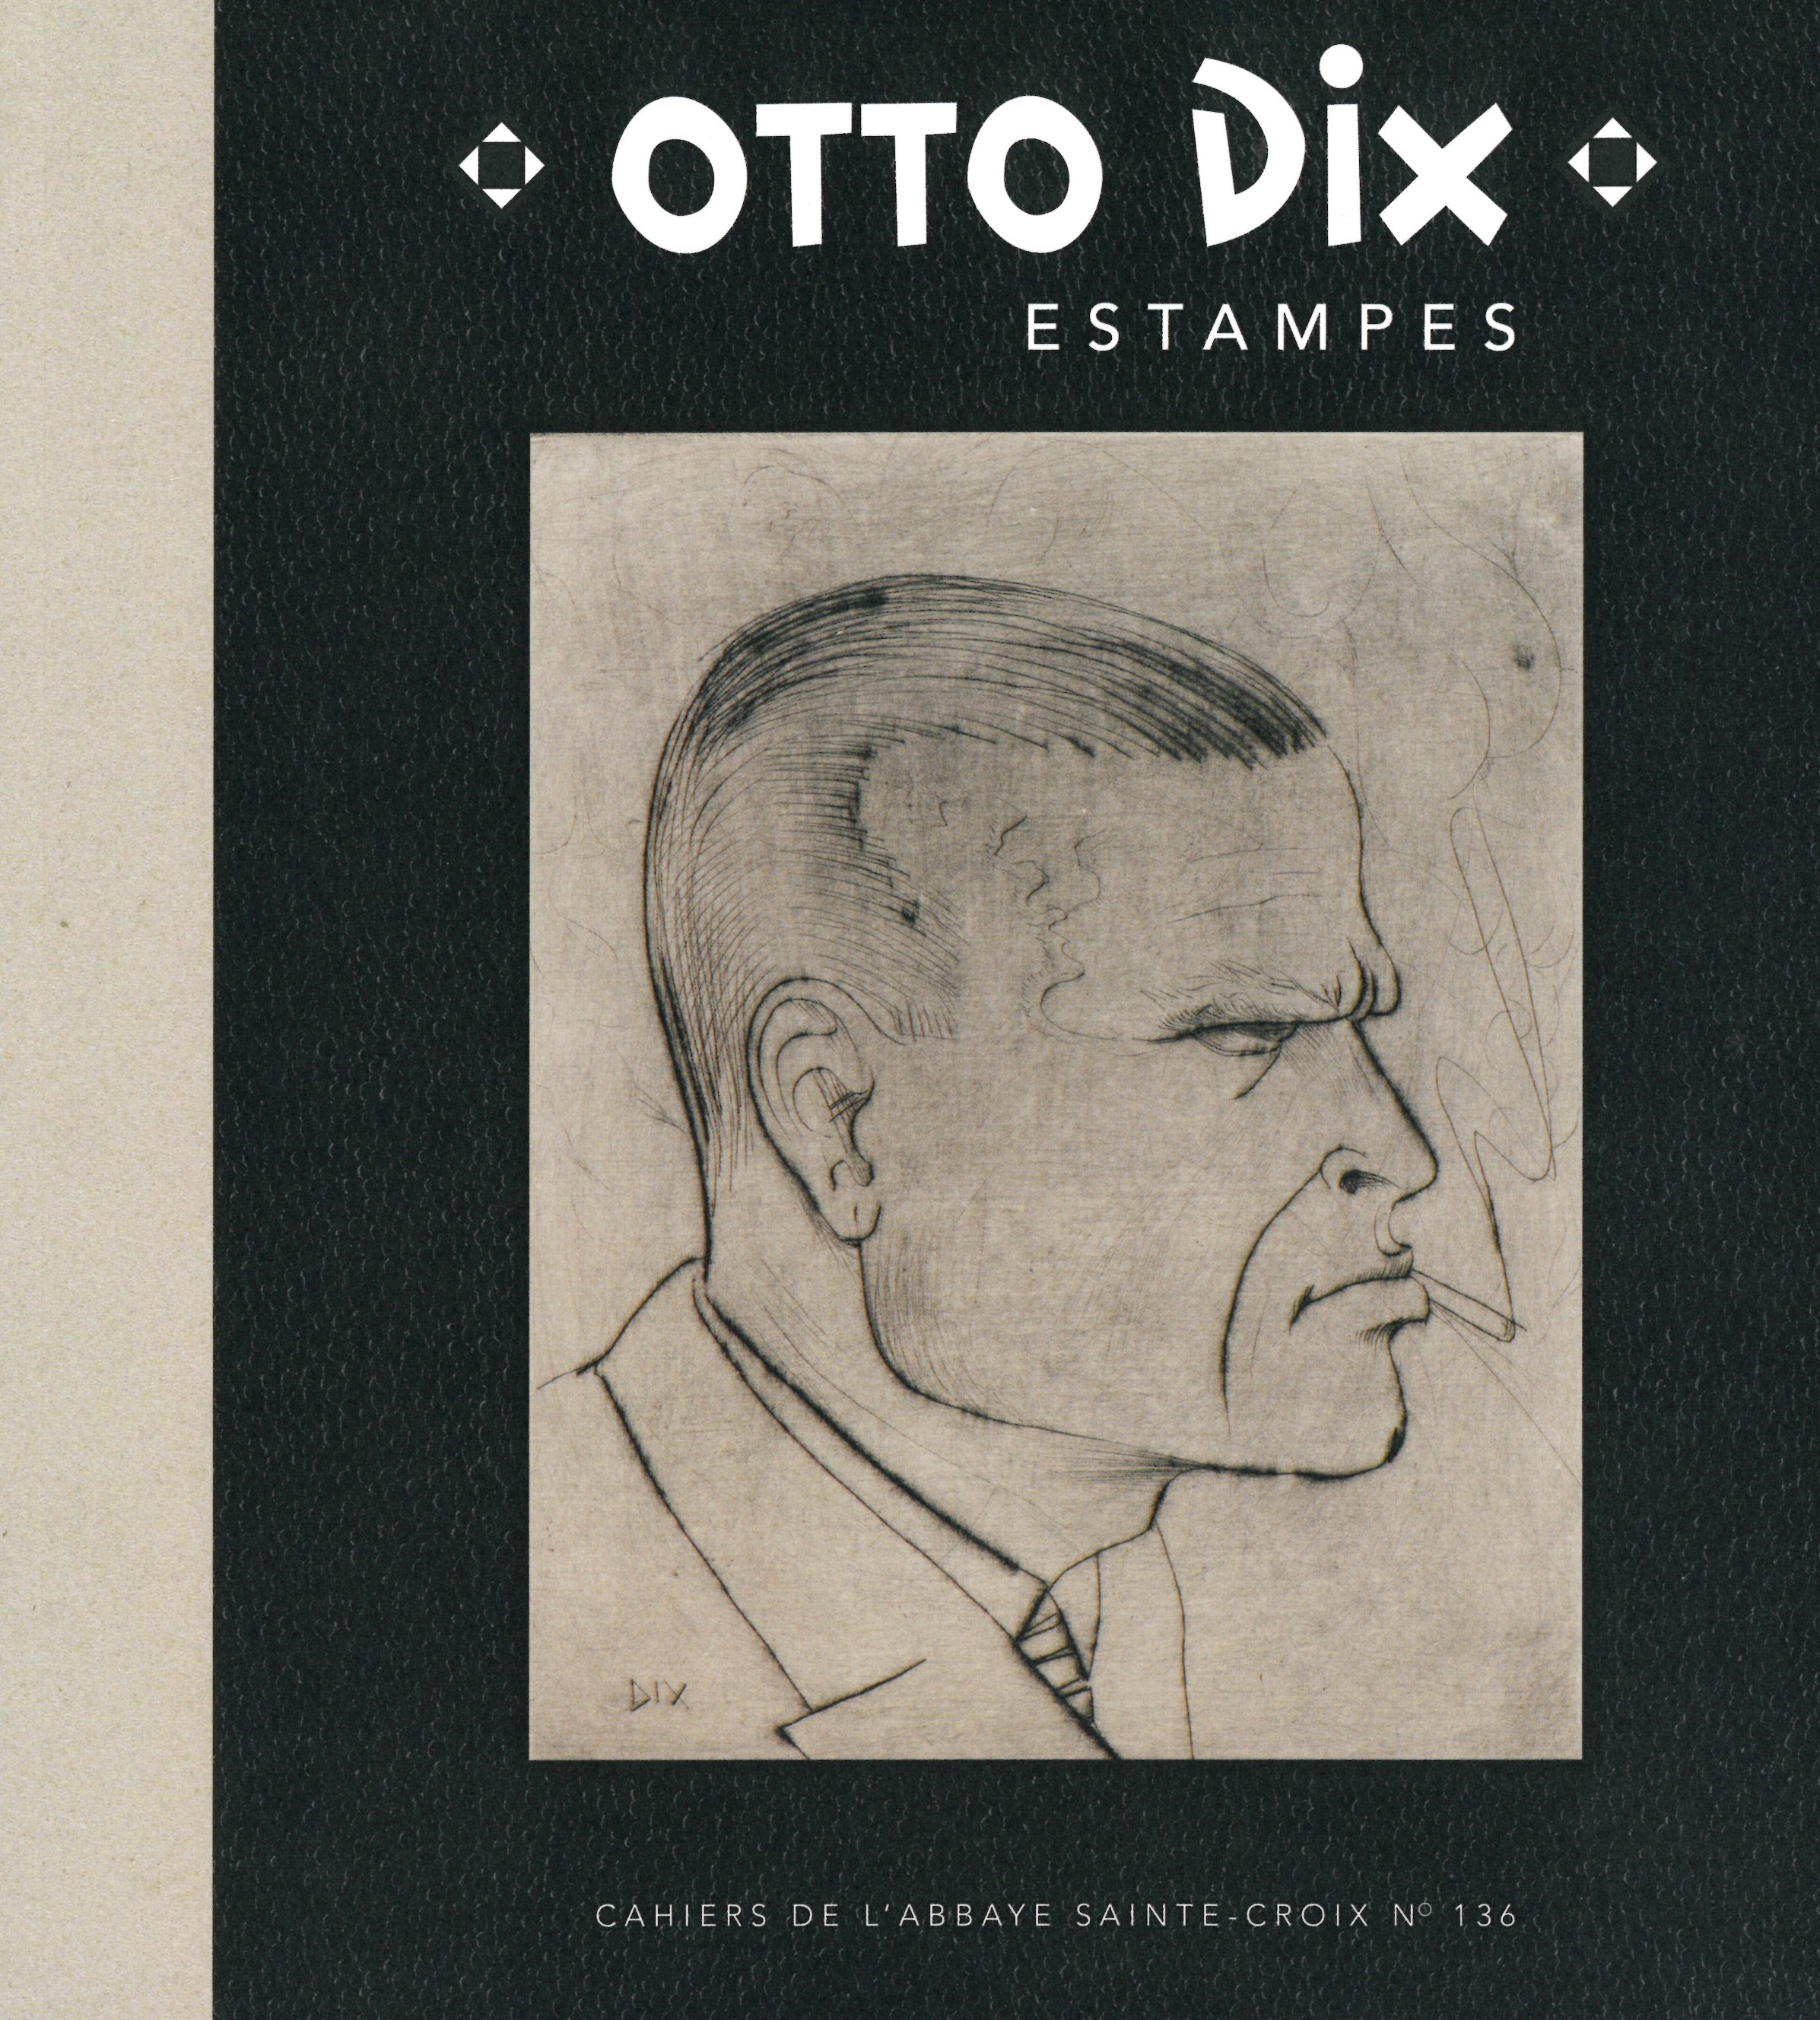 Katalog Otto Dix Estampes